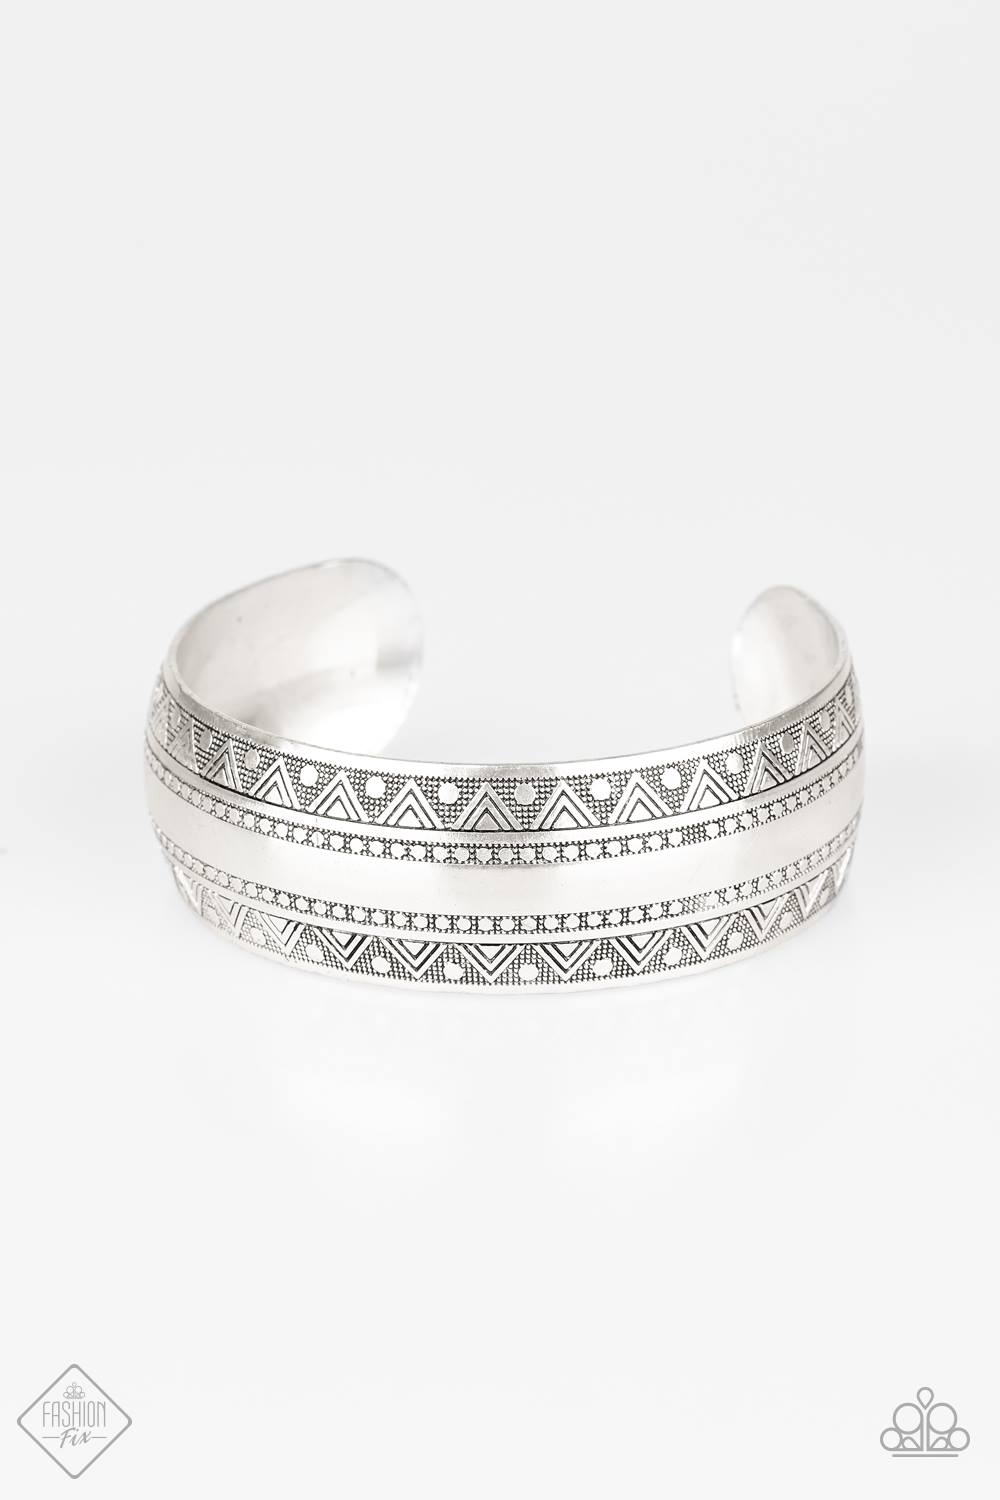 . Desert Peaks - Silver Bracelet (Cuff)